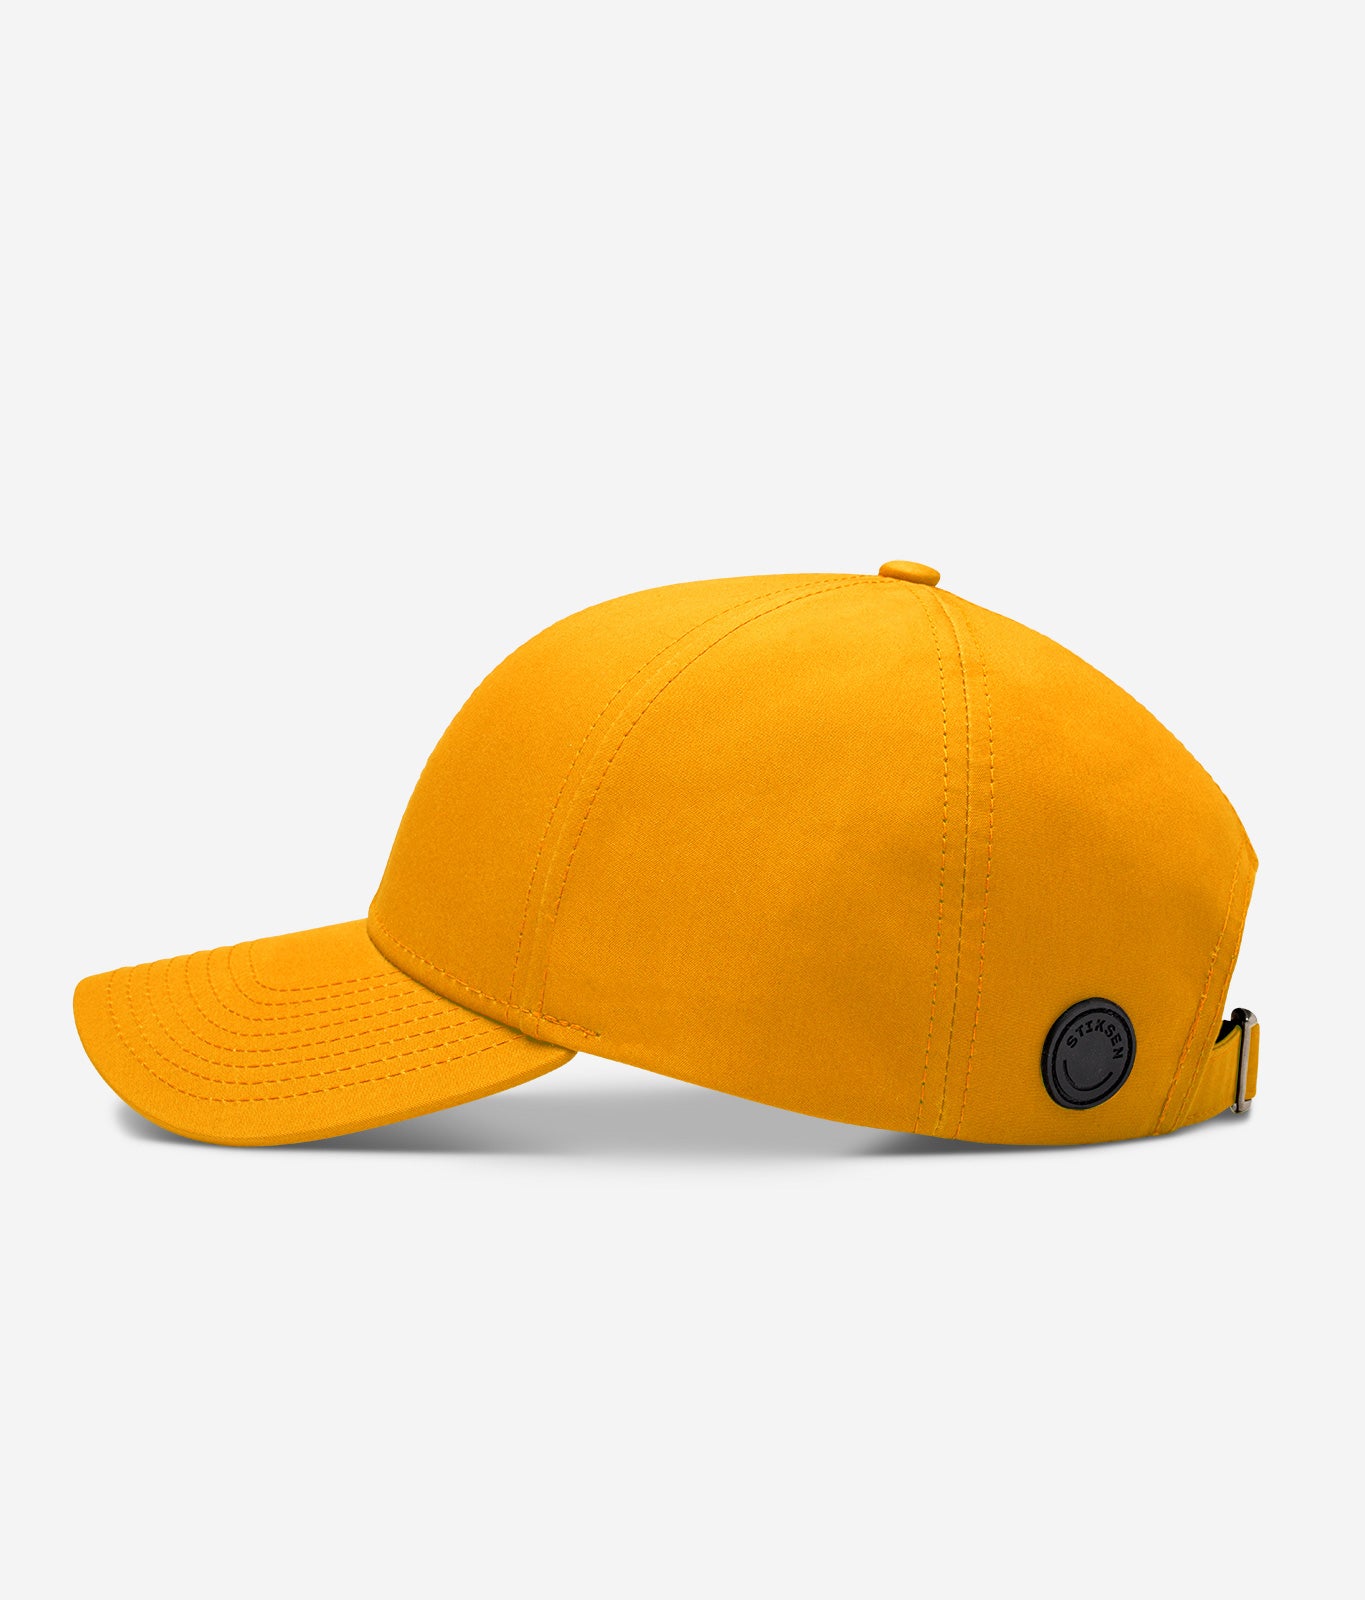 Stiksen 107 Ventile Yellow Baseball Cap Profile